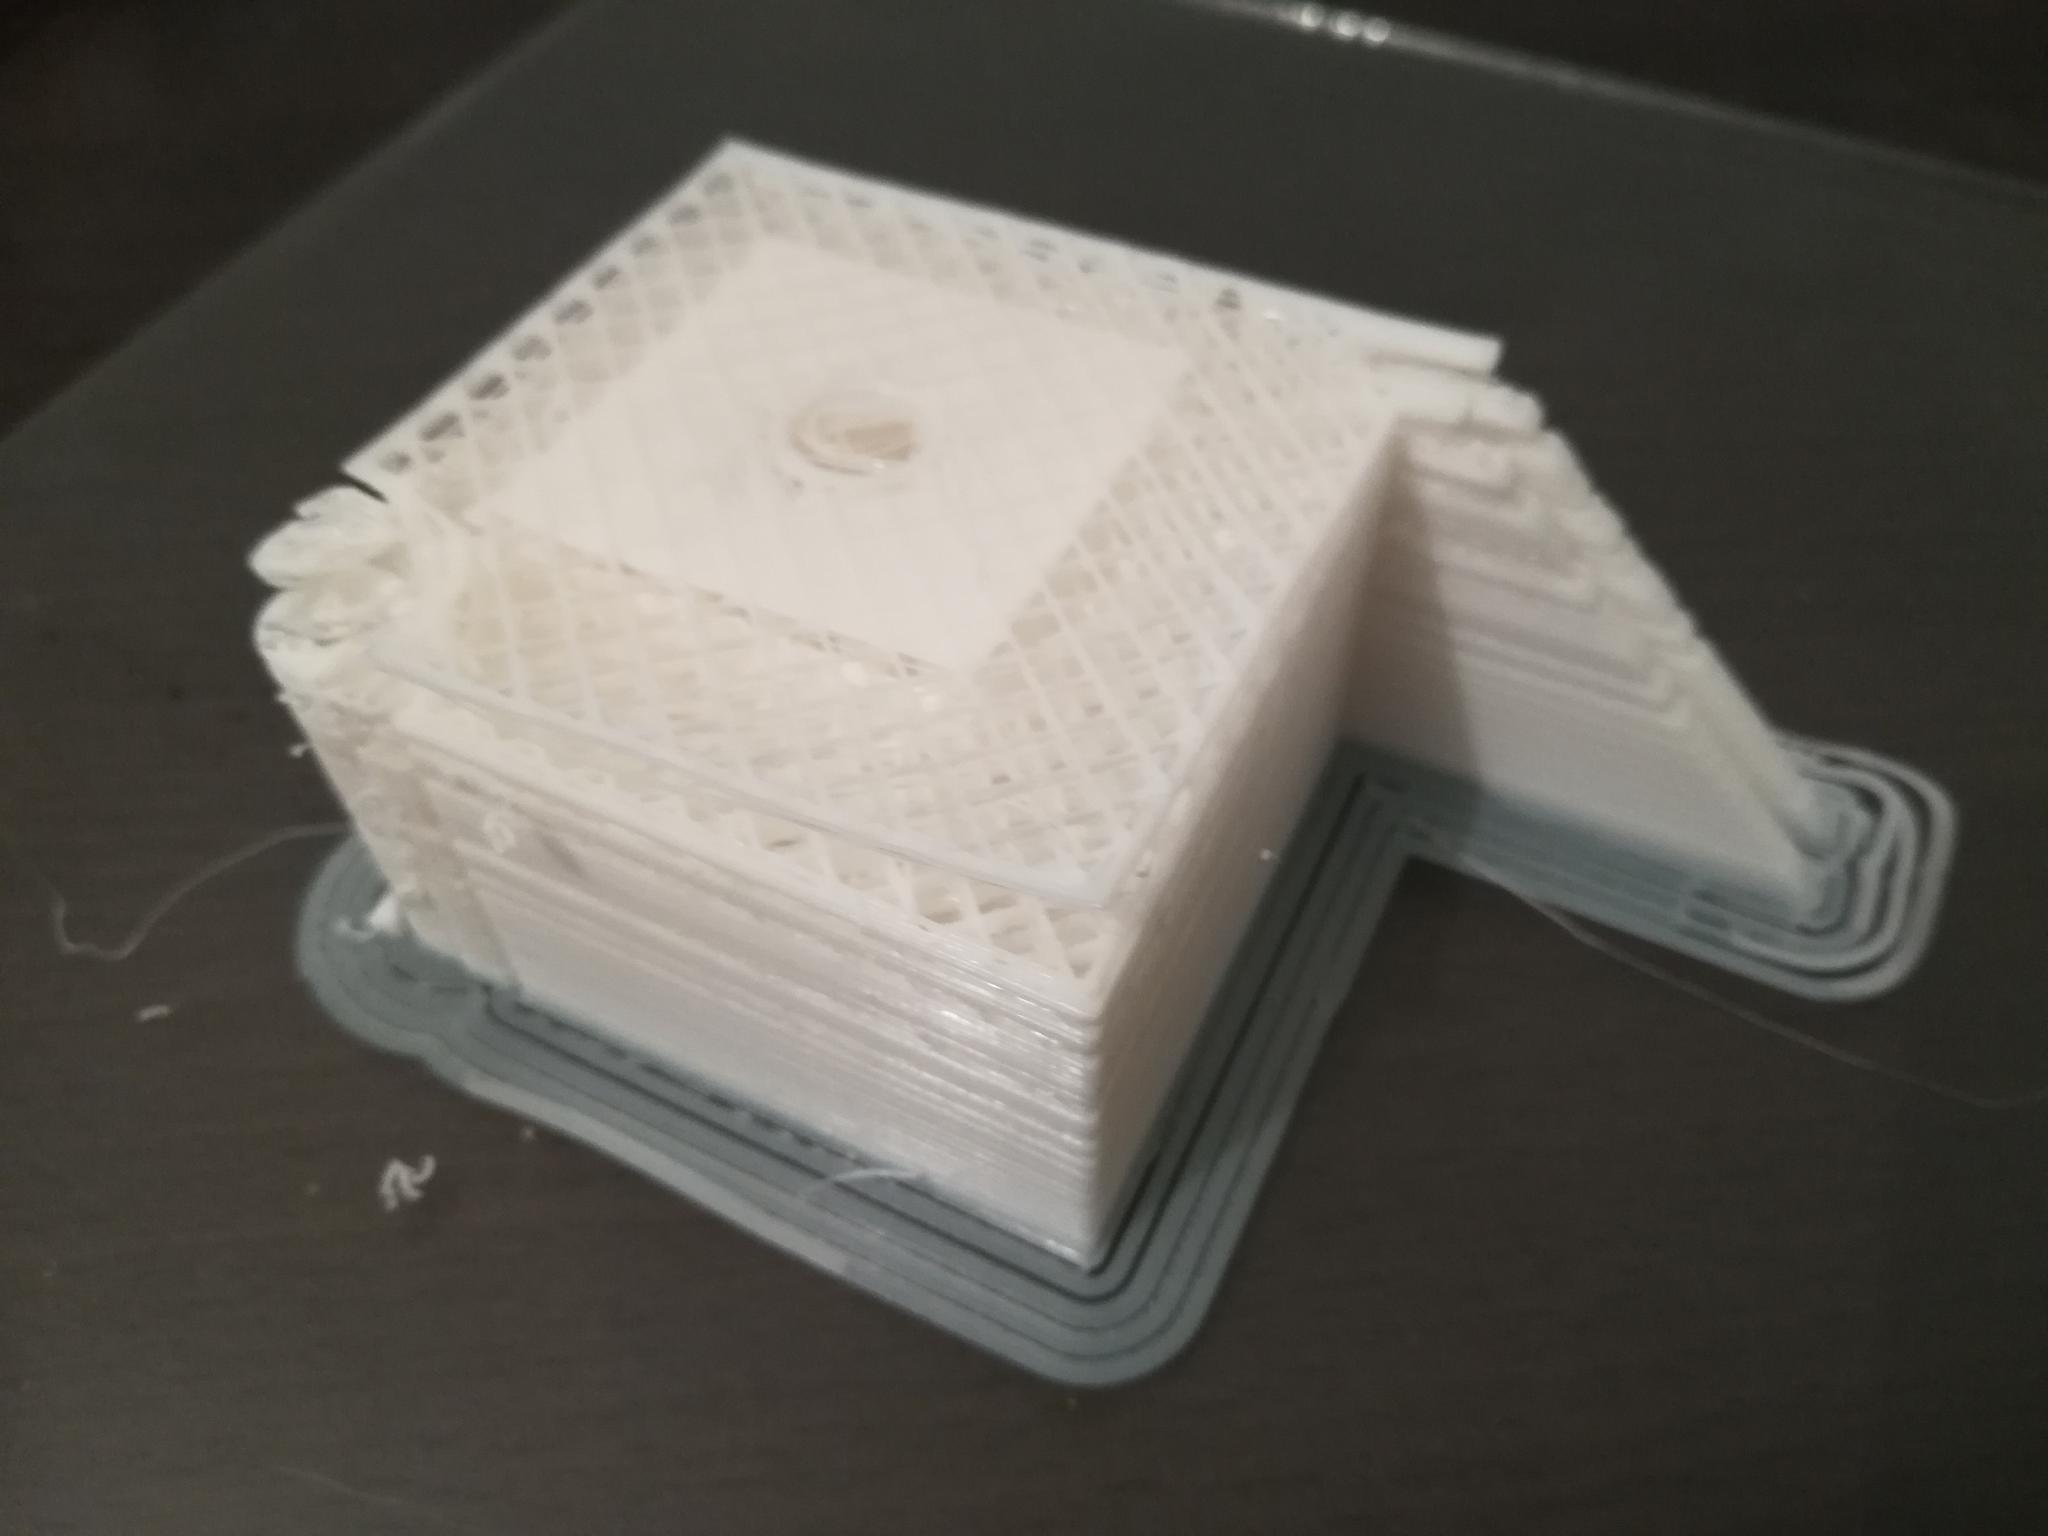 Connexion 3DTouch sur Ender 3 - Creality - Forum pour les imprimantes 3D et  l'impression 3D